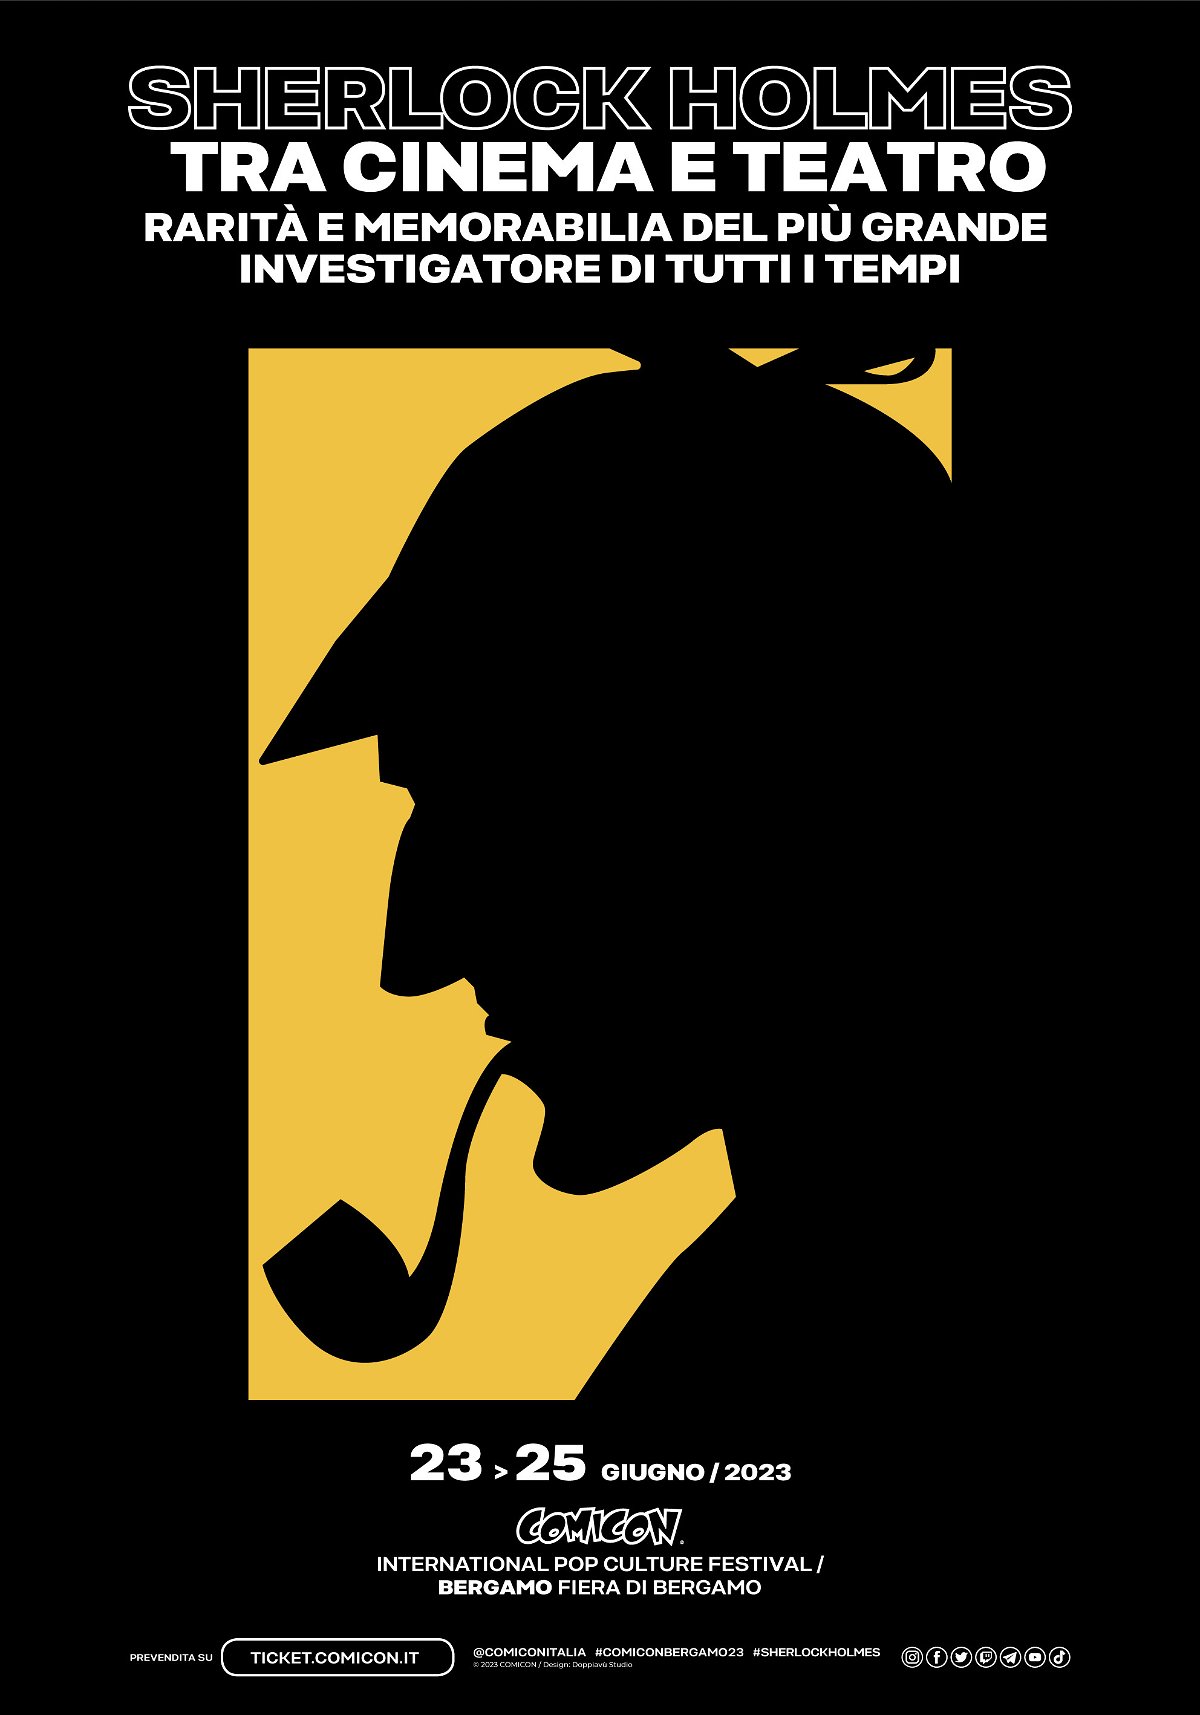 Il manifesto della mostra Sherlock Holmes tra cinema e teatro - Rarità e memorabilia del più grande investigatore di tutti i tempi